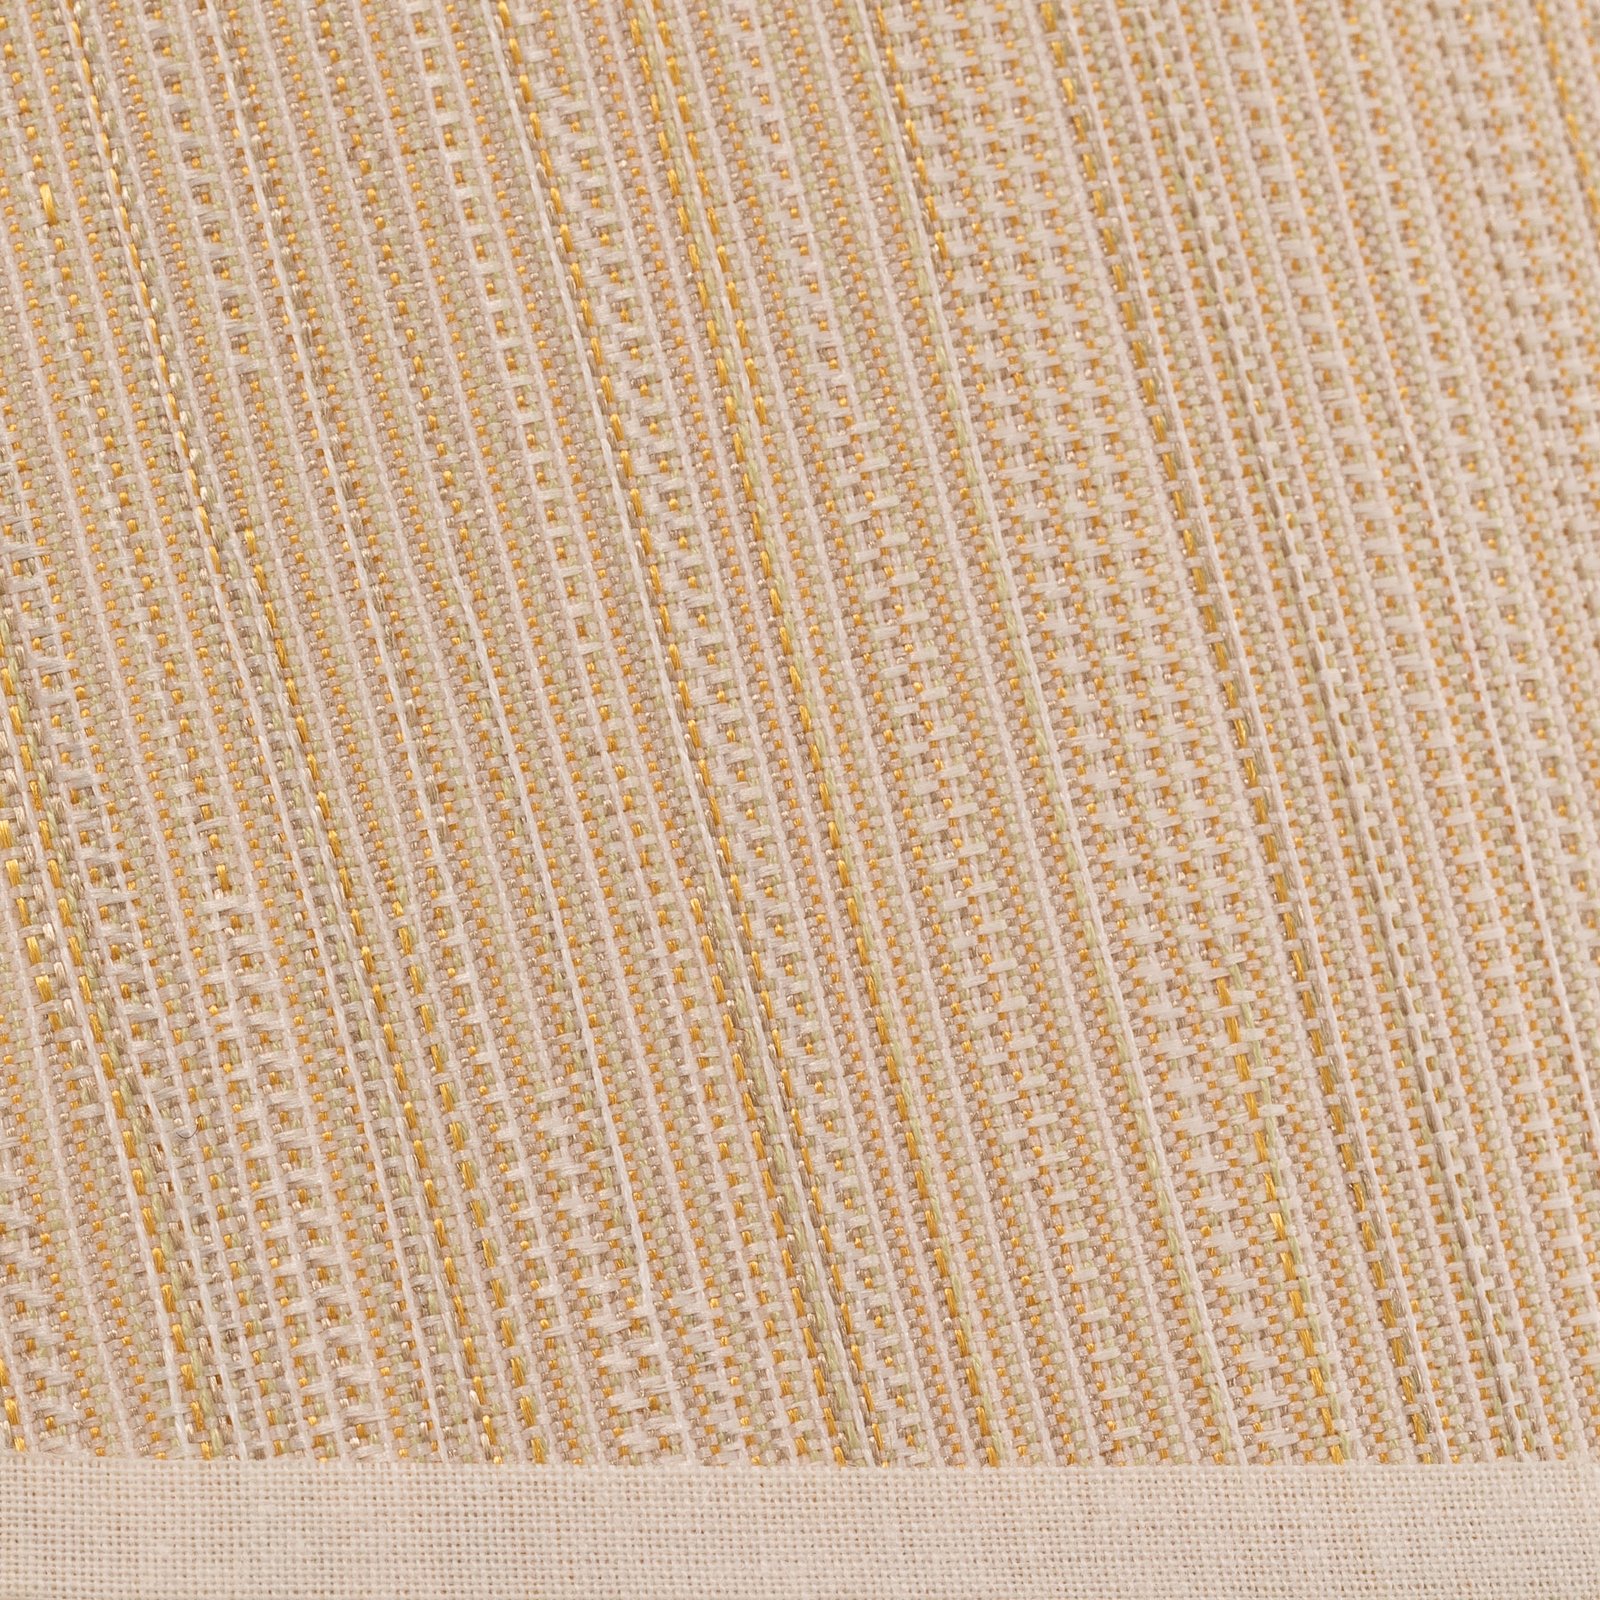 Kap Sofia Hoogte 26 cm, wit/goud striped